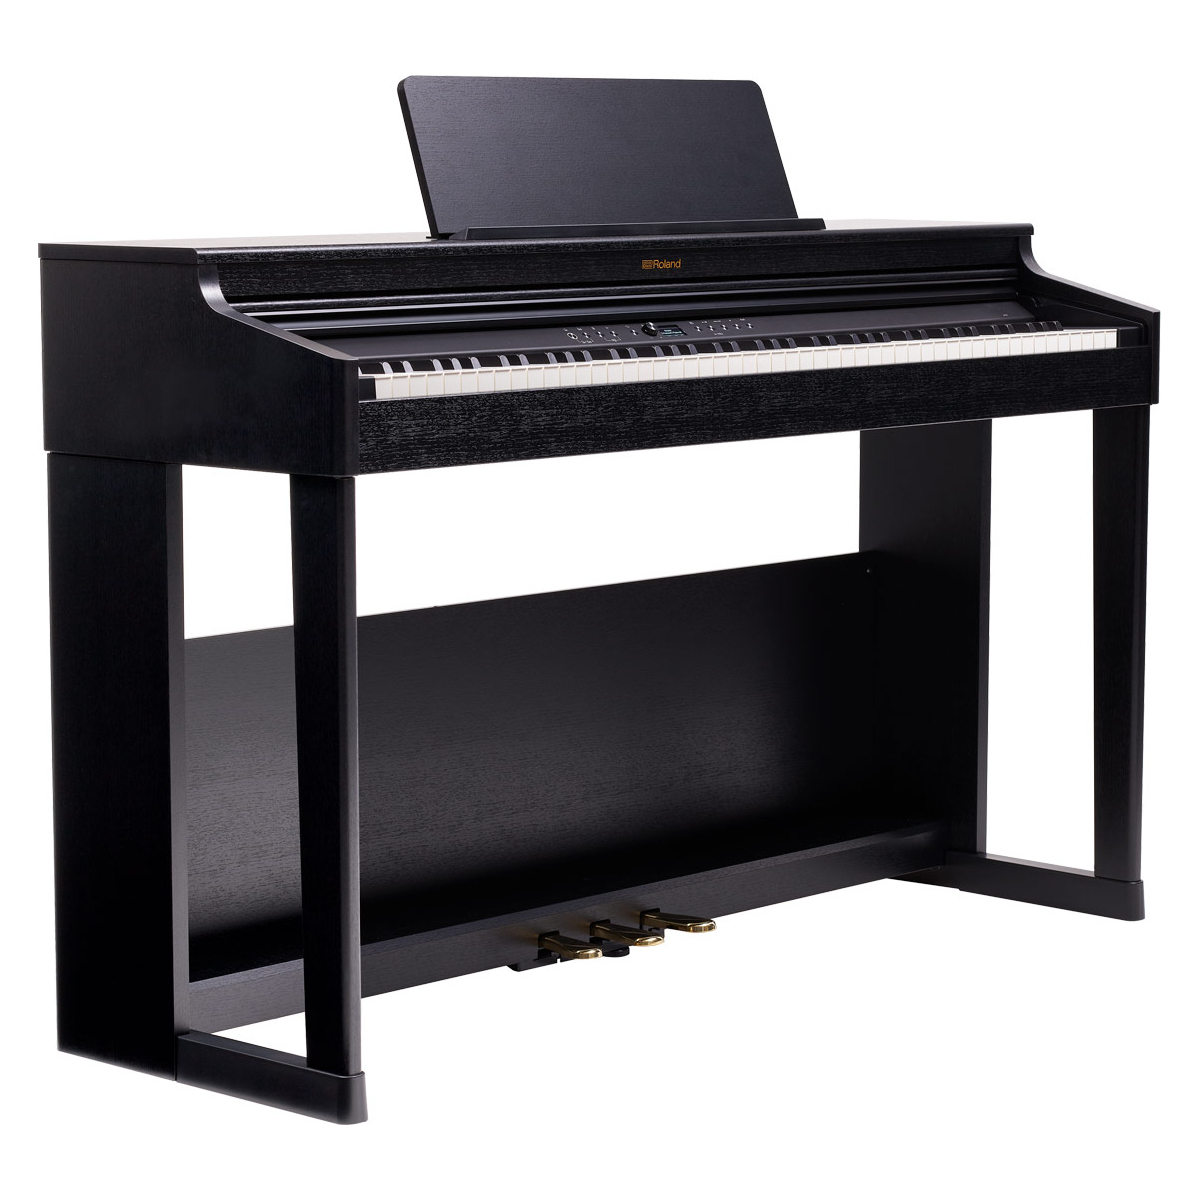 Pianos numériques meubles - Roland - RP701 (NOIR)